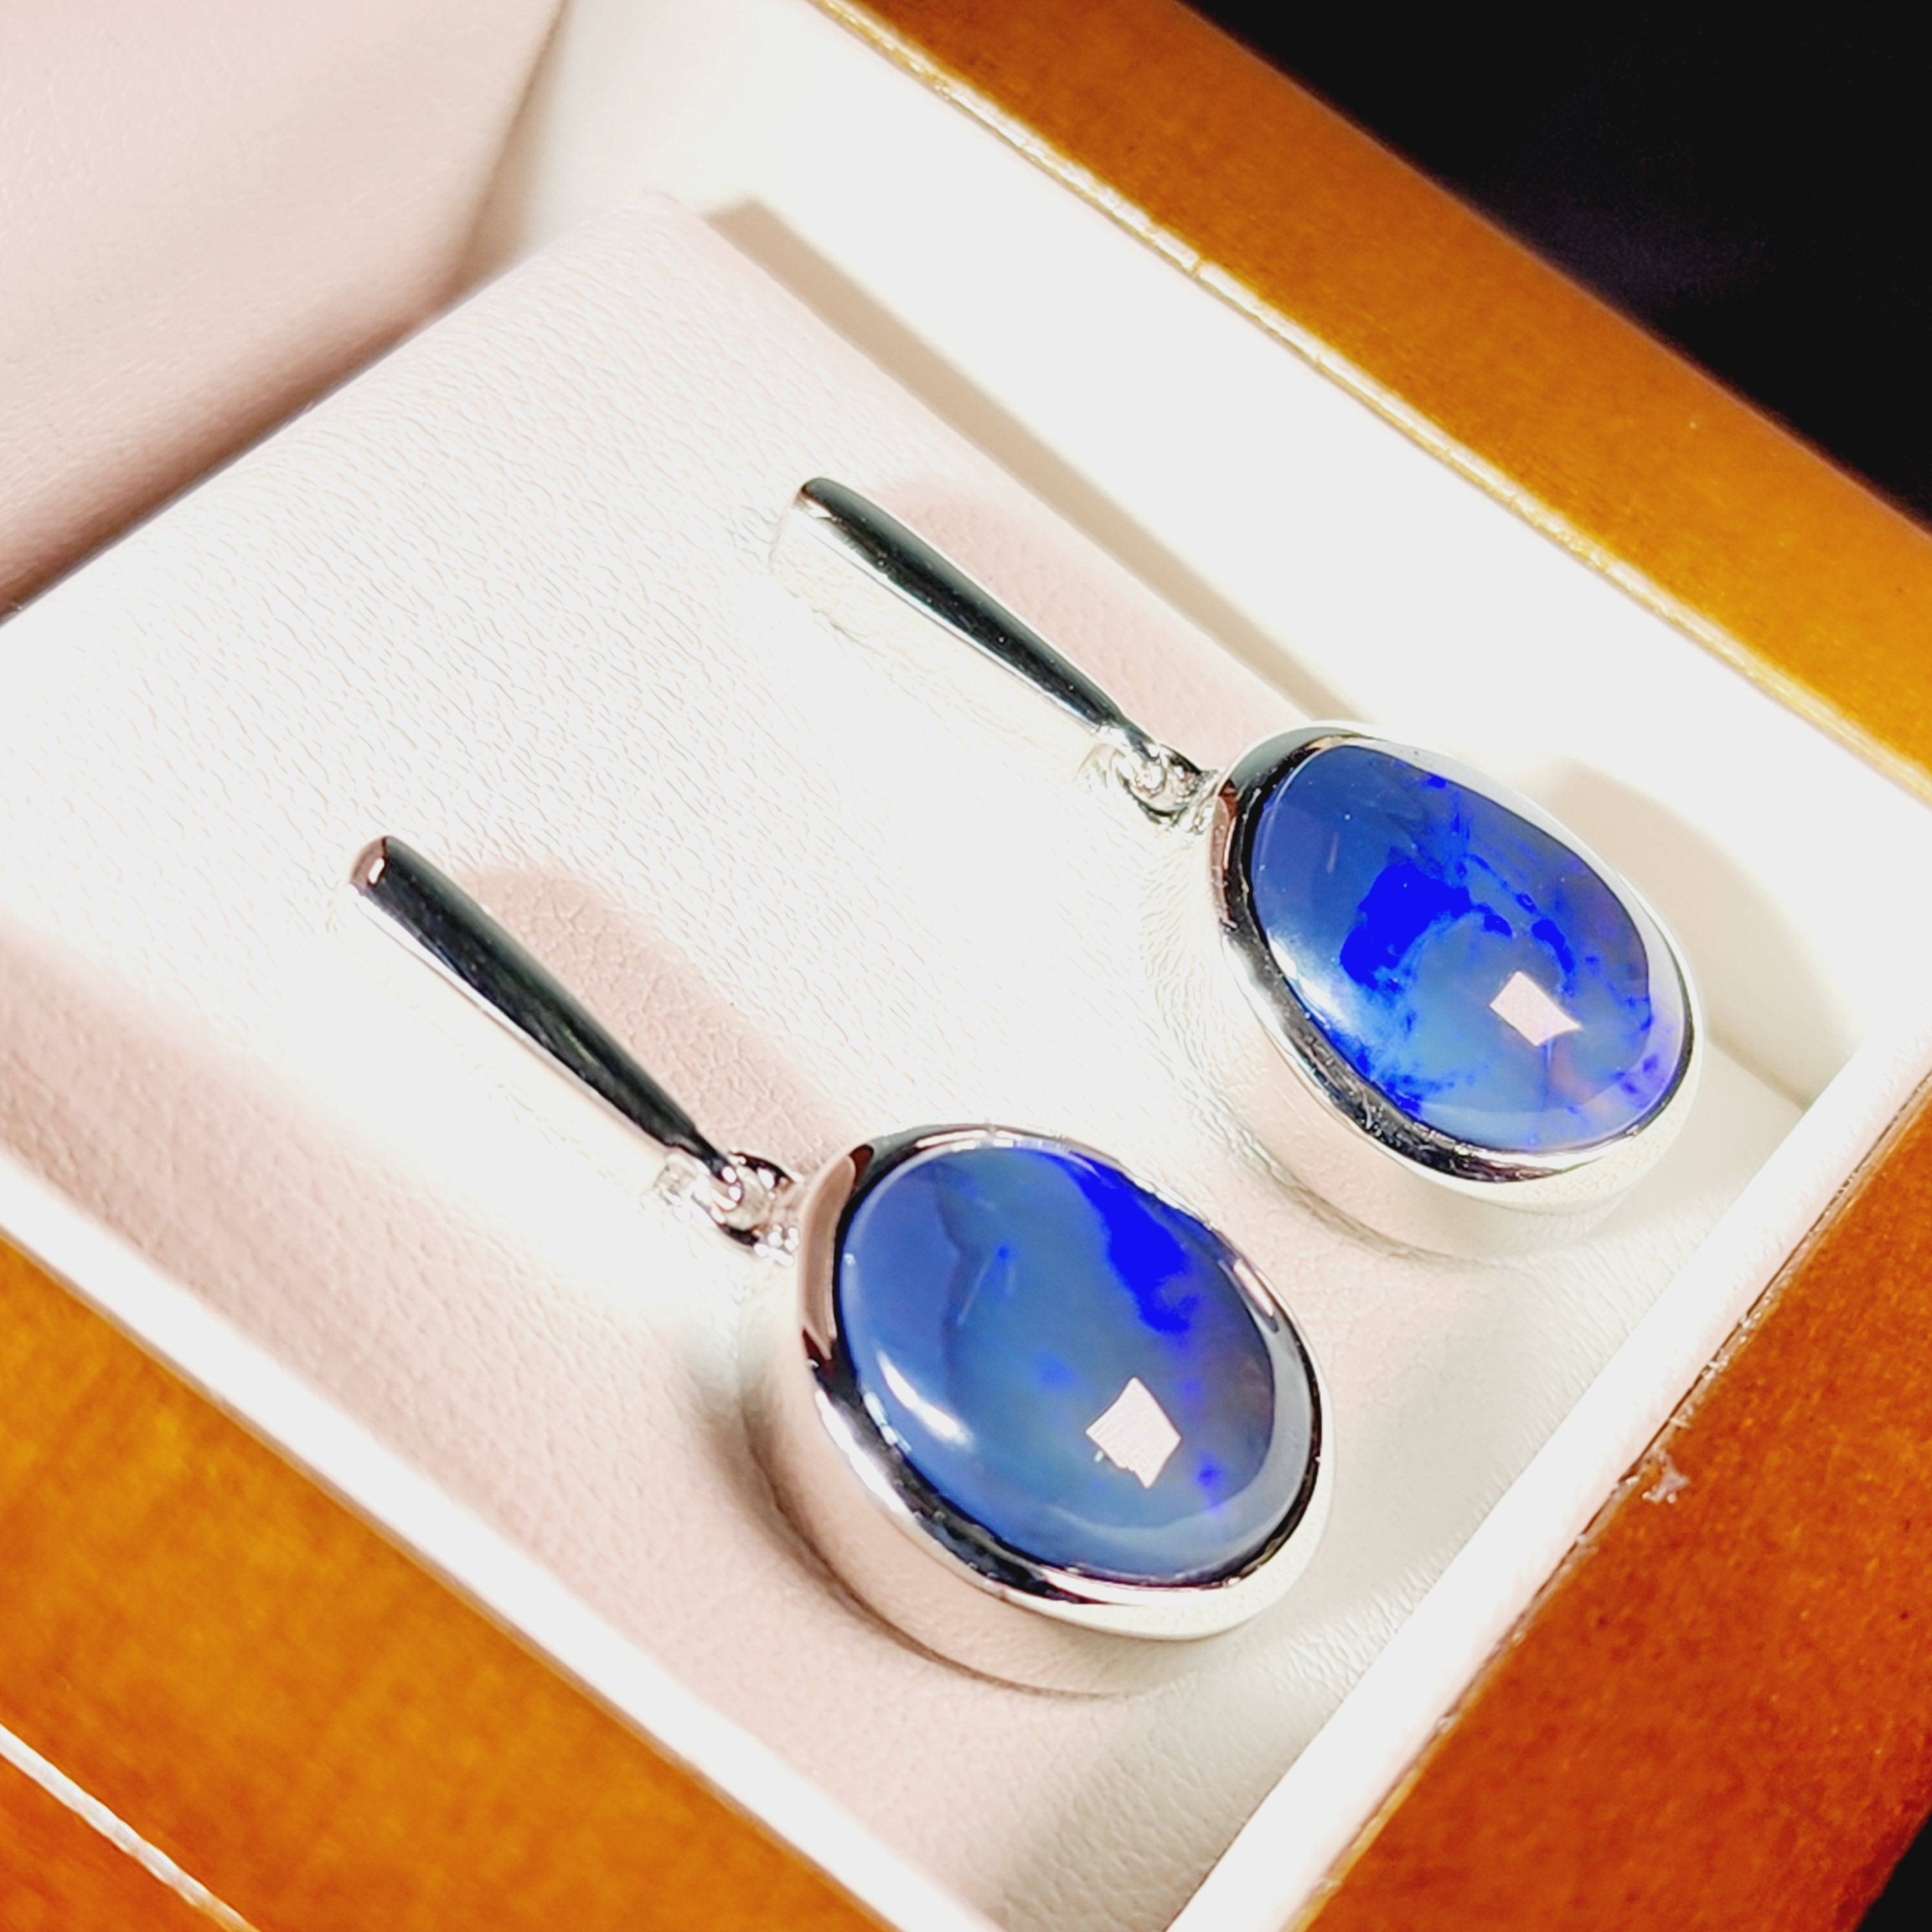 Black Opal Silver Earrings - Australian Opal Jewellery Online Store